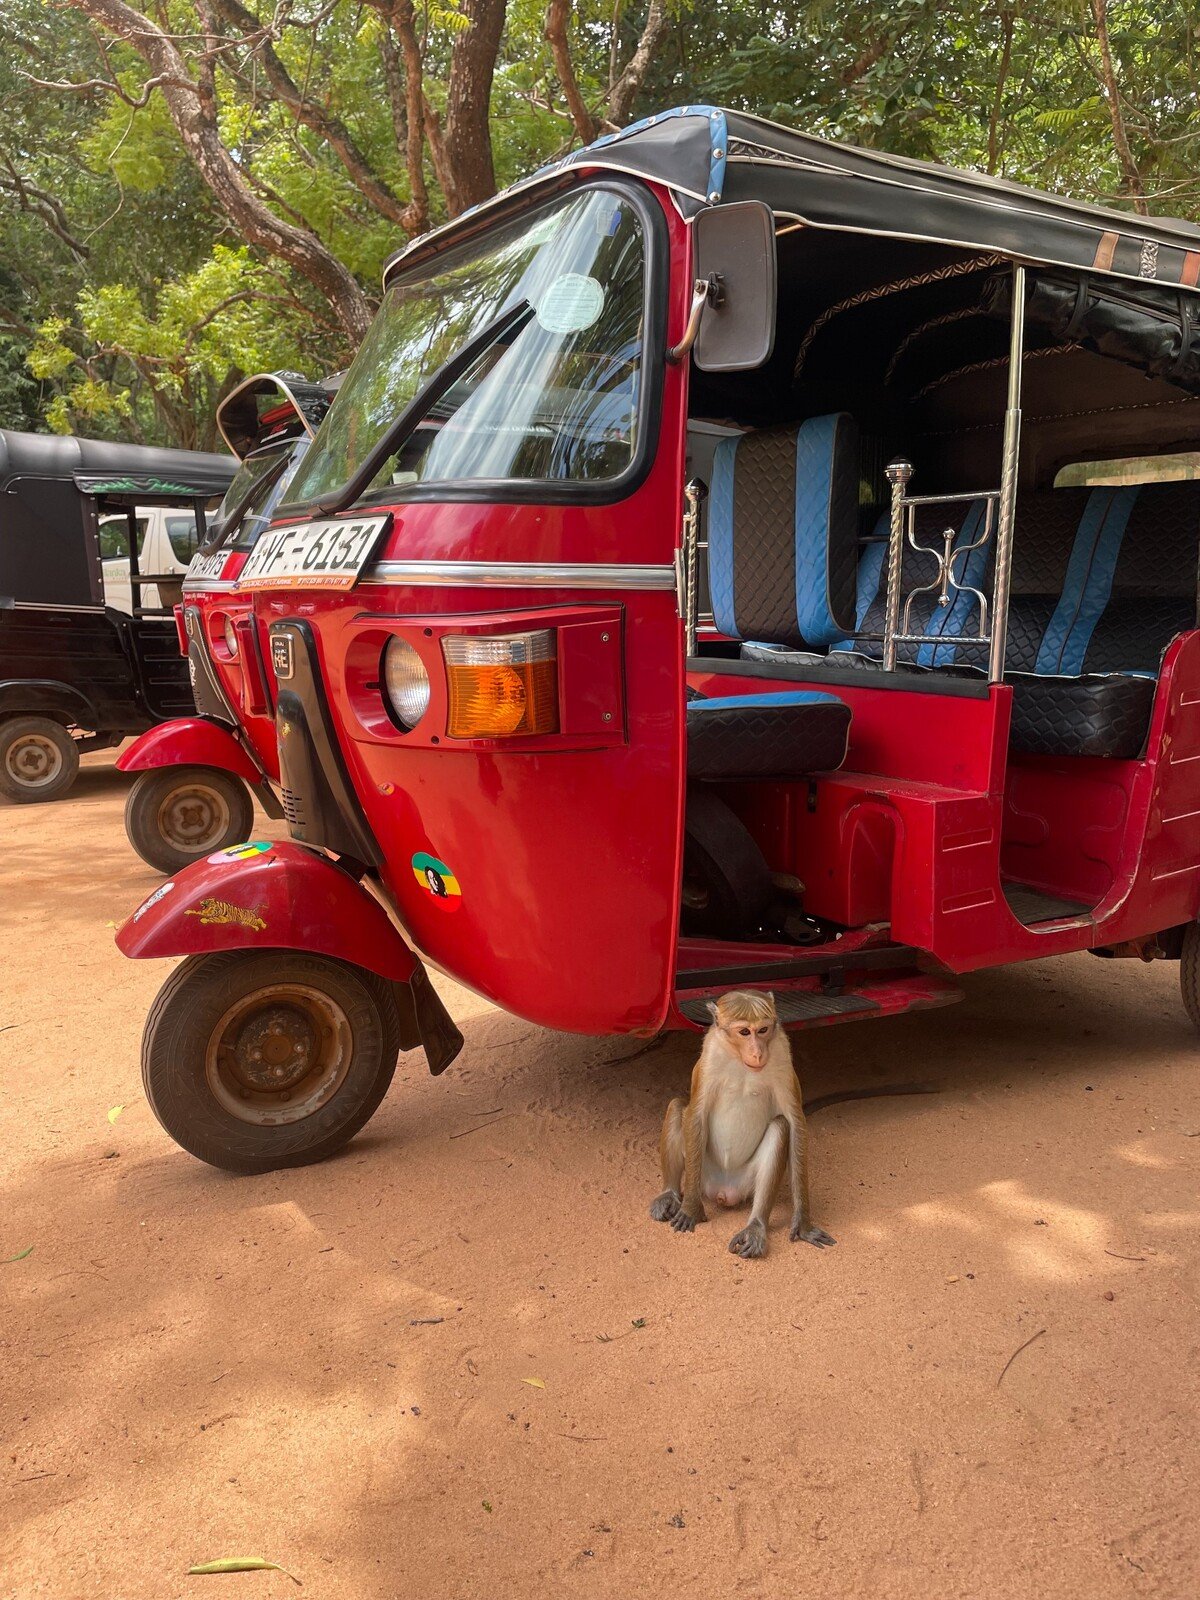 Opice vedia, že niekedy v tuk-tukoch môžu nájsť jedlo alebo iné veci. Netrpezlivo čakajú, kým si ich niekto prestane všímať, aby mohli kradnúť. 